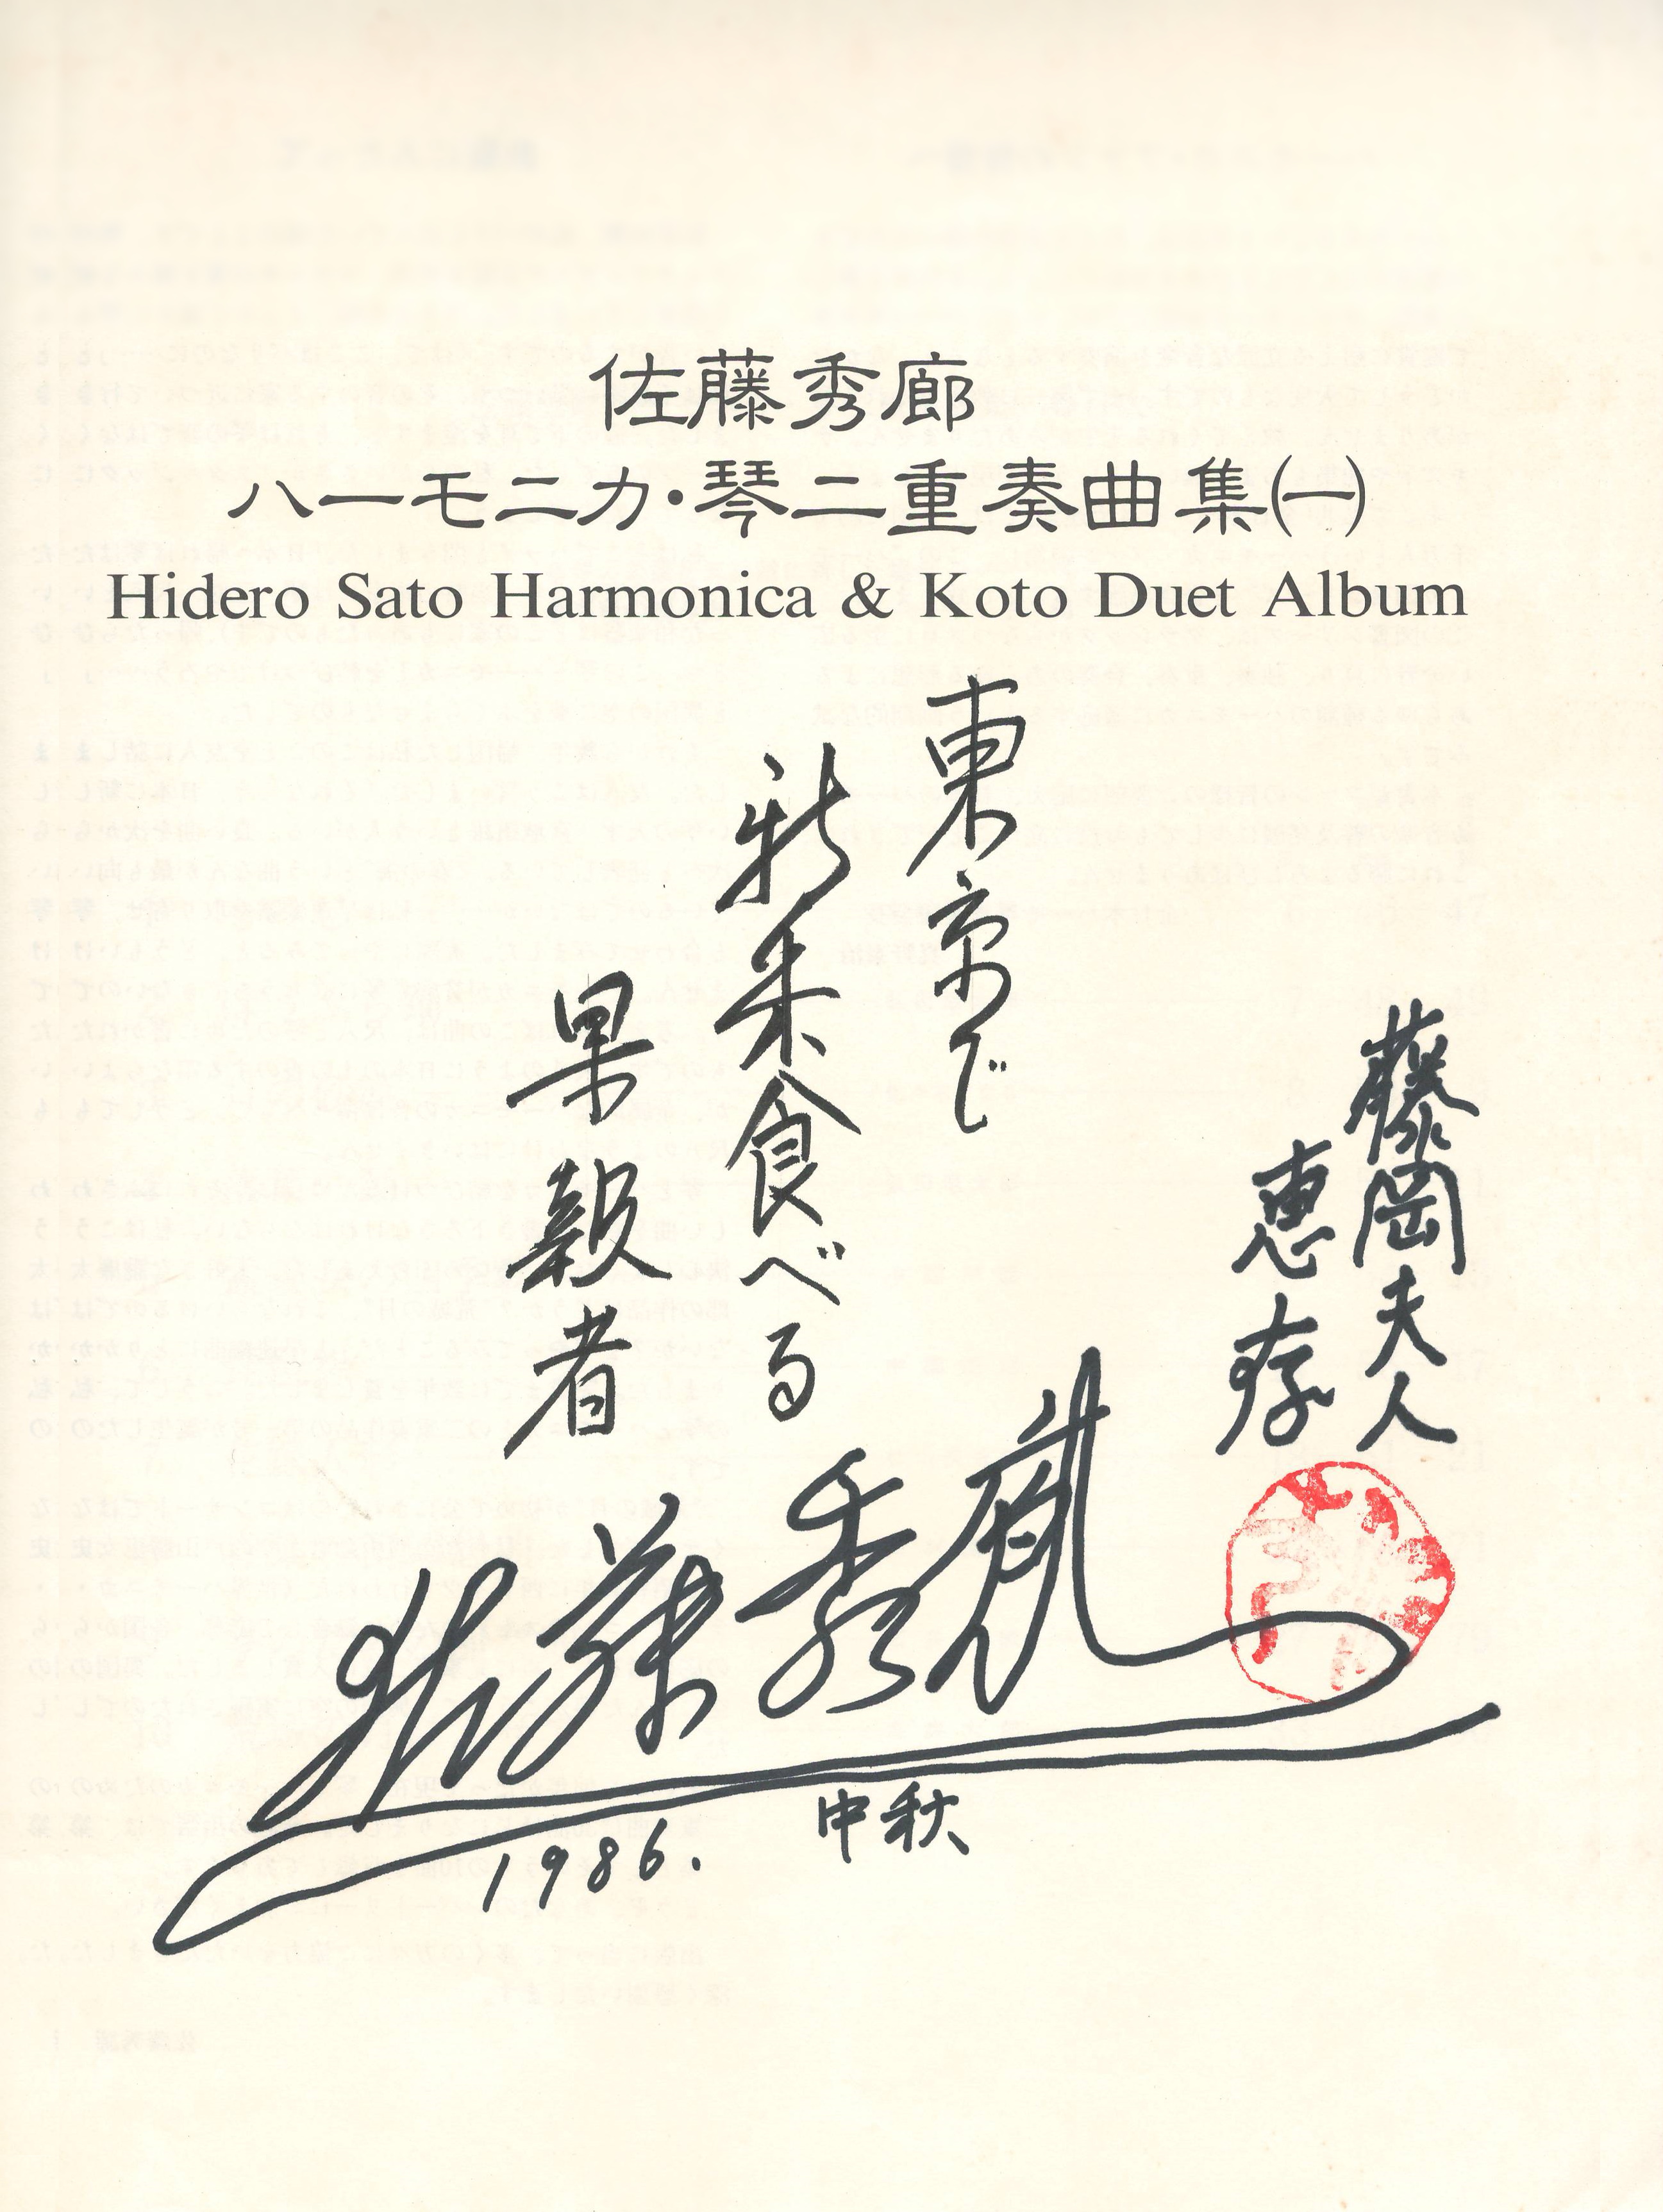 琴との二重奏の楽譜の本に書かれた先生のサイン